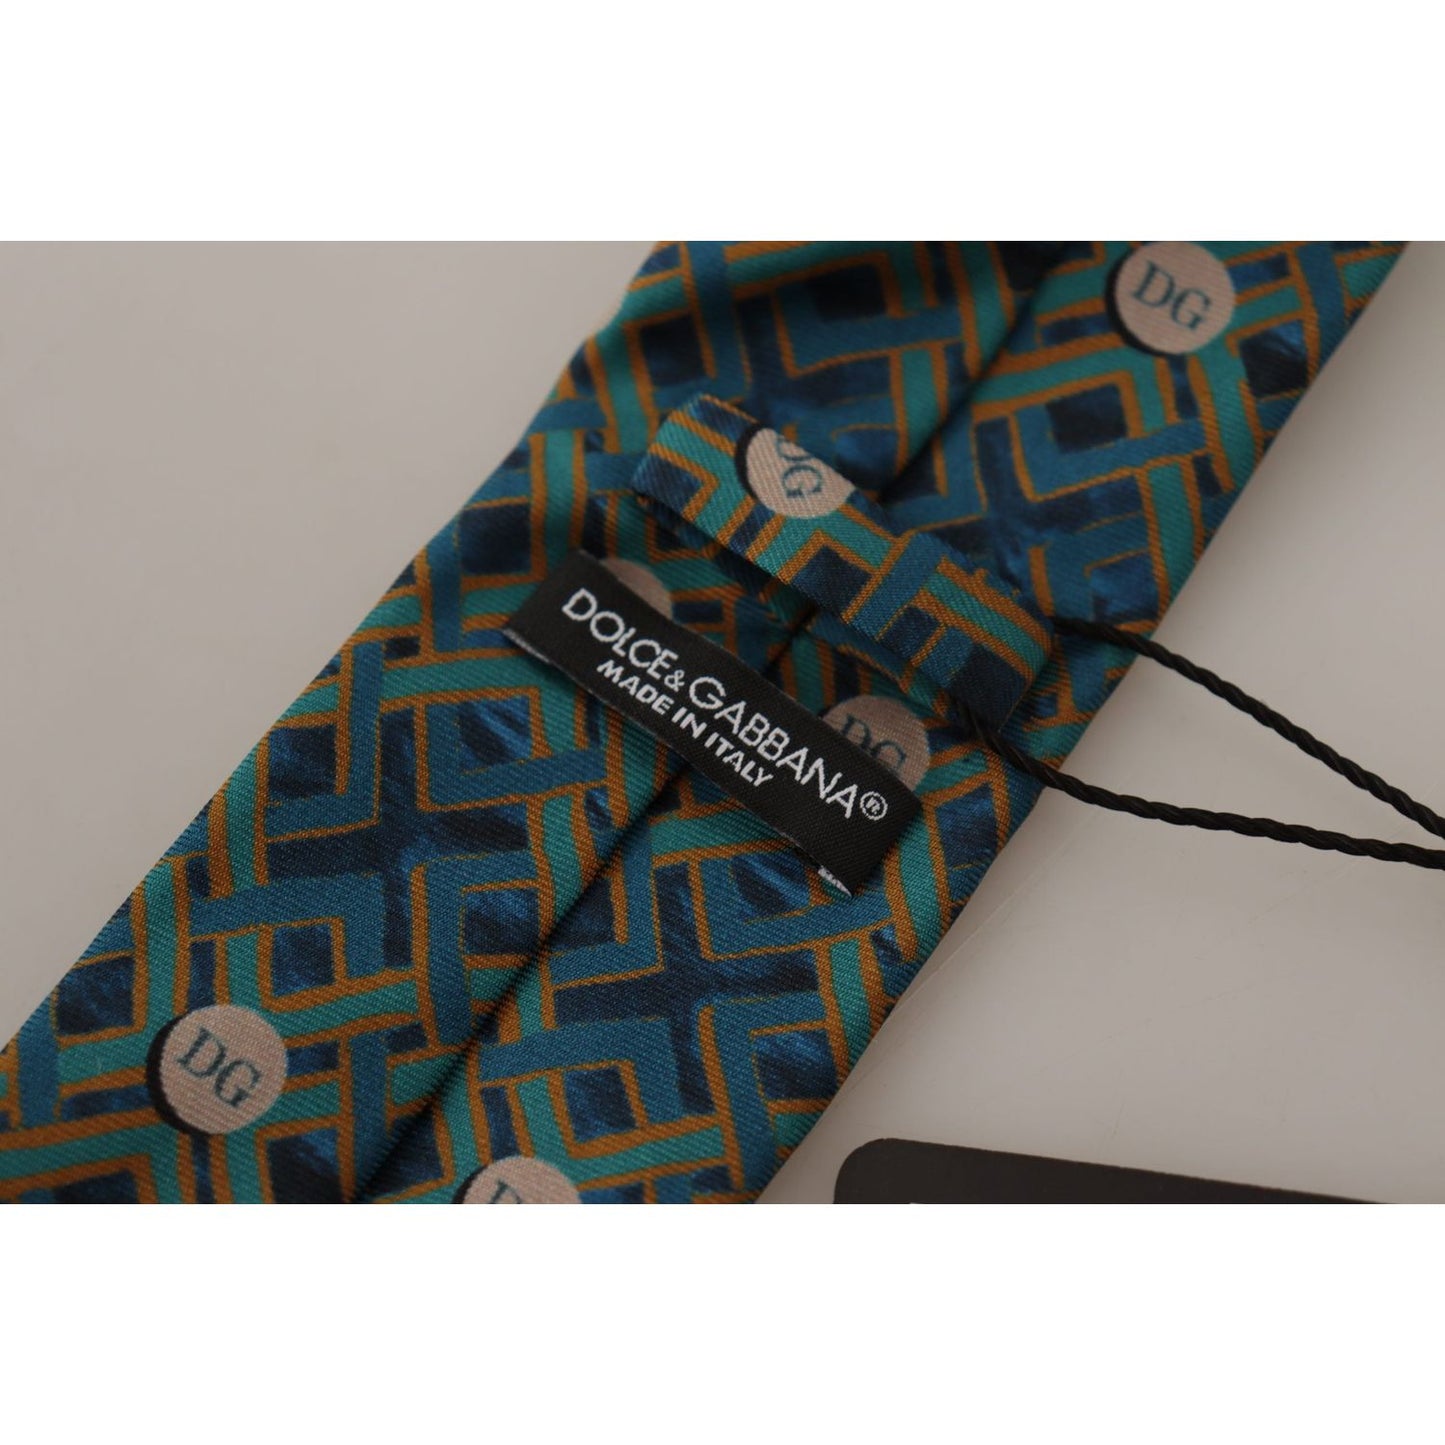 Dolce & Gabbana Elegant Silk Blue Bow Tie blue-fantasy-print-silk-adjustable-necktie-accessory-tie